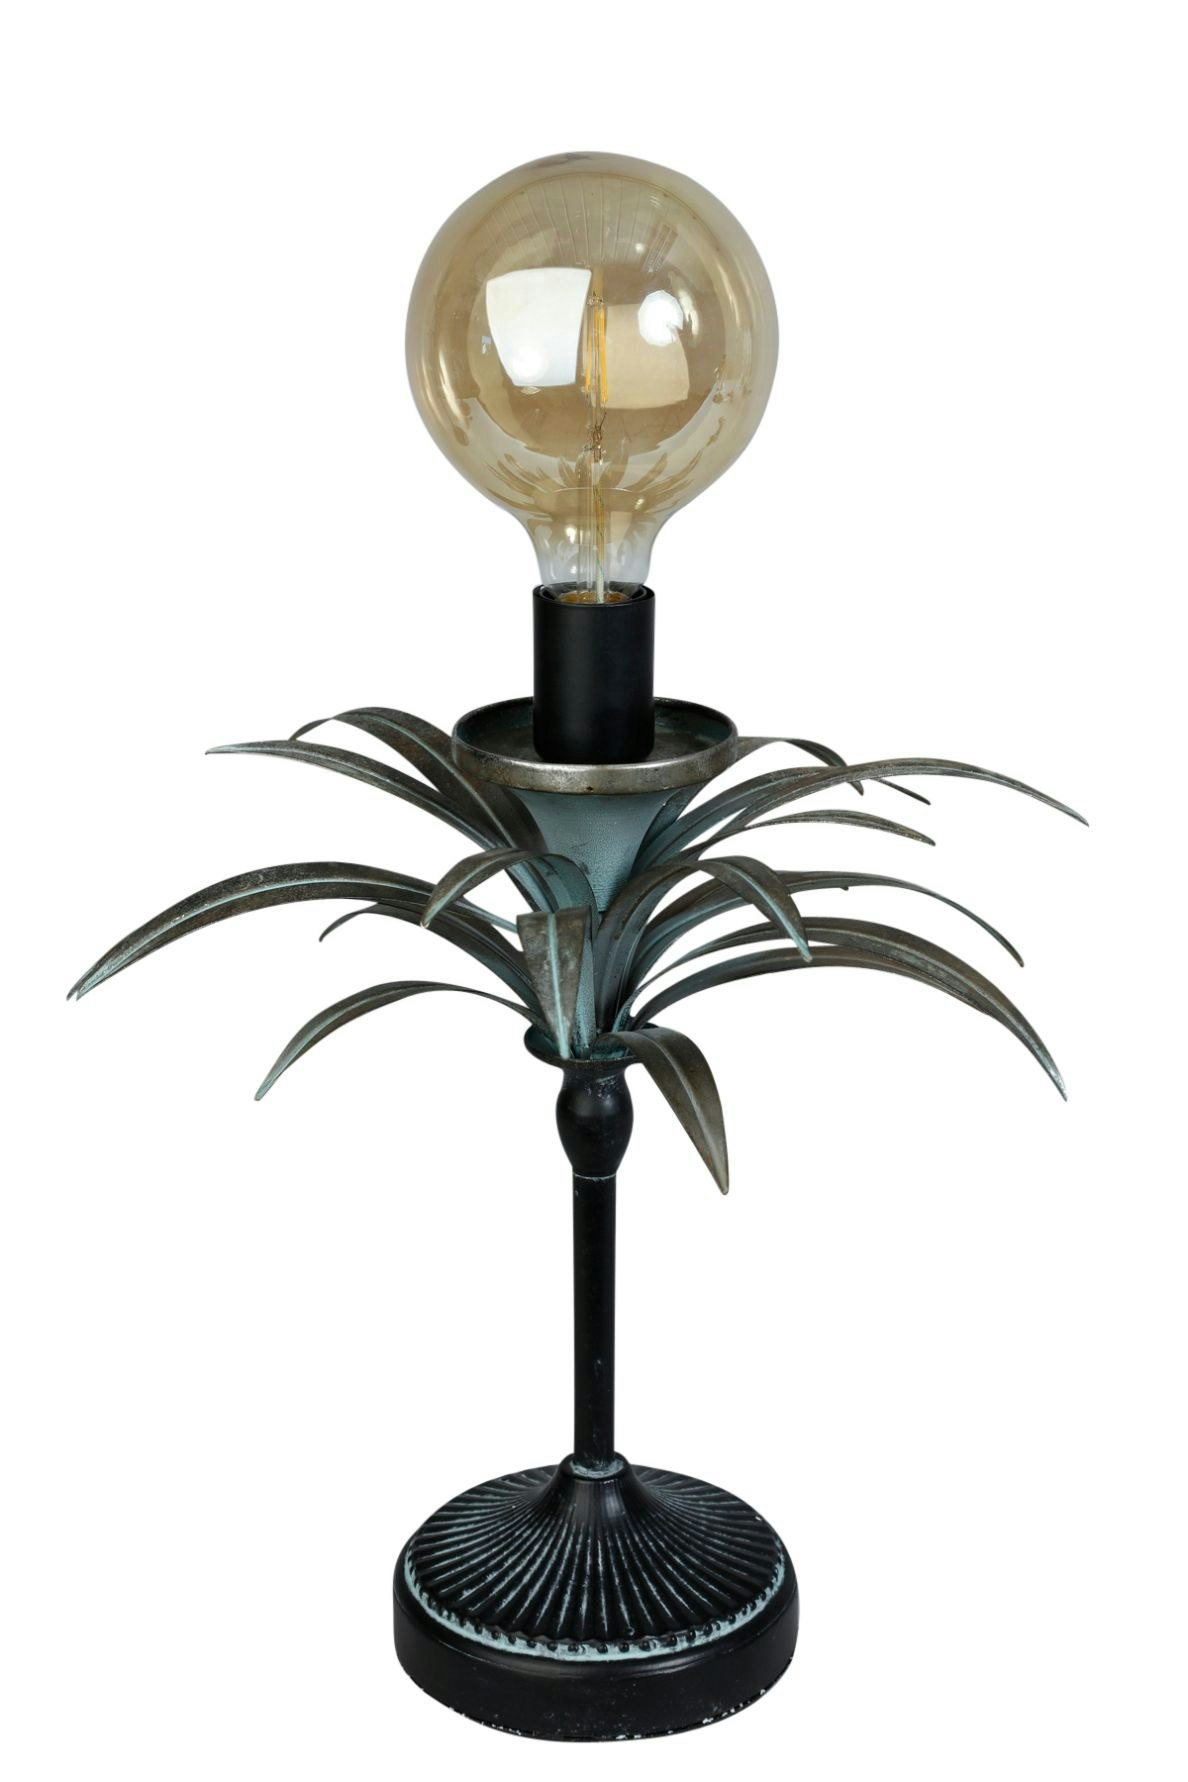 Palm en bordslapa/lampfot med en svart fot och antikbehandlade blad med E27 fattning från Stjernsund kollektion, höjd 40 cm.